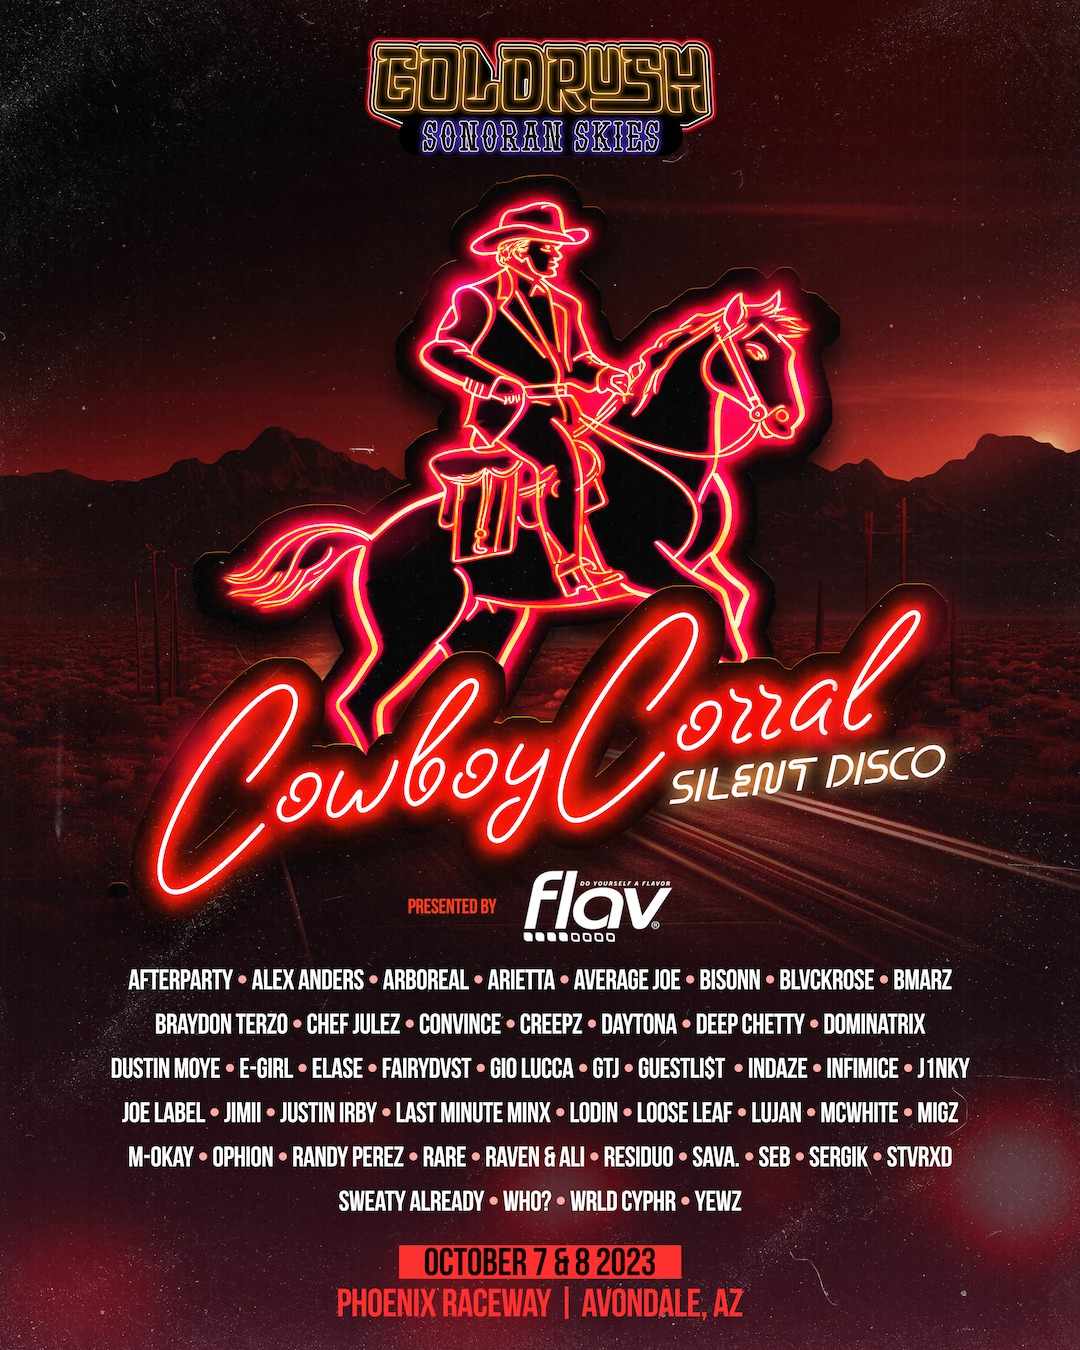  Cowboy Corral Silent Disco